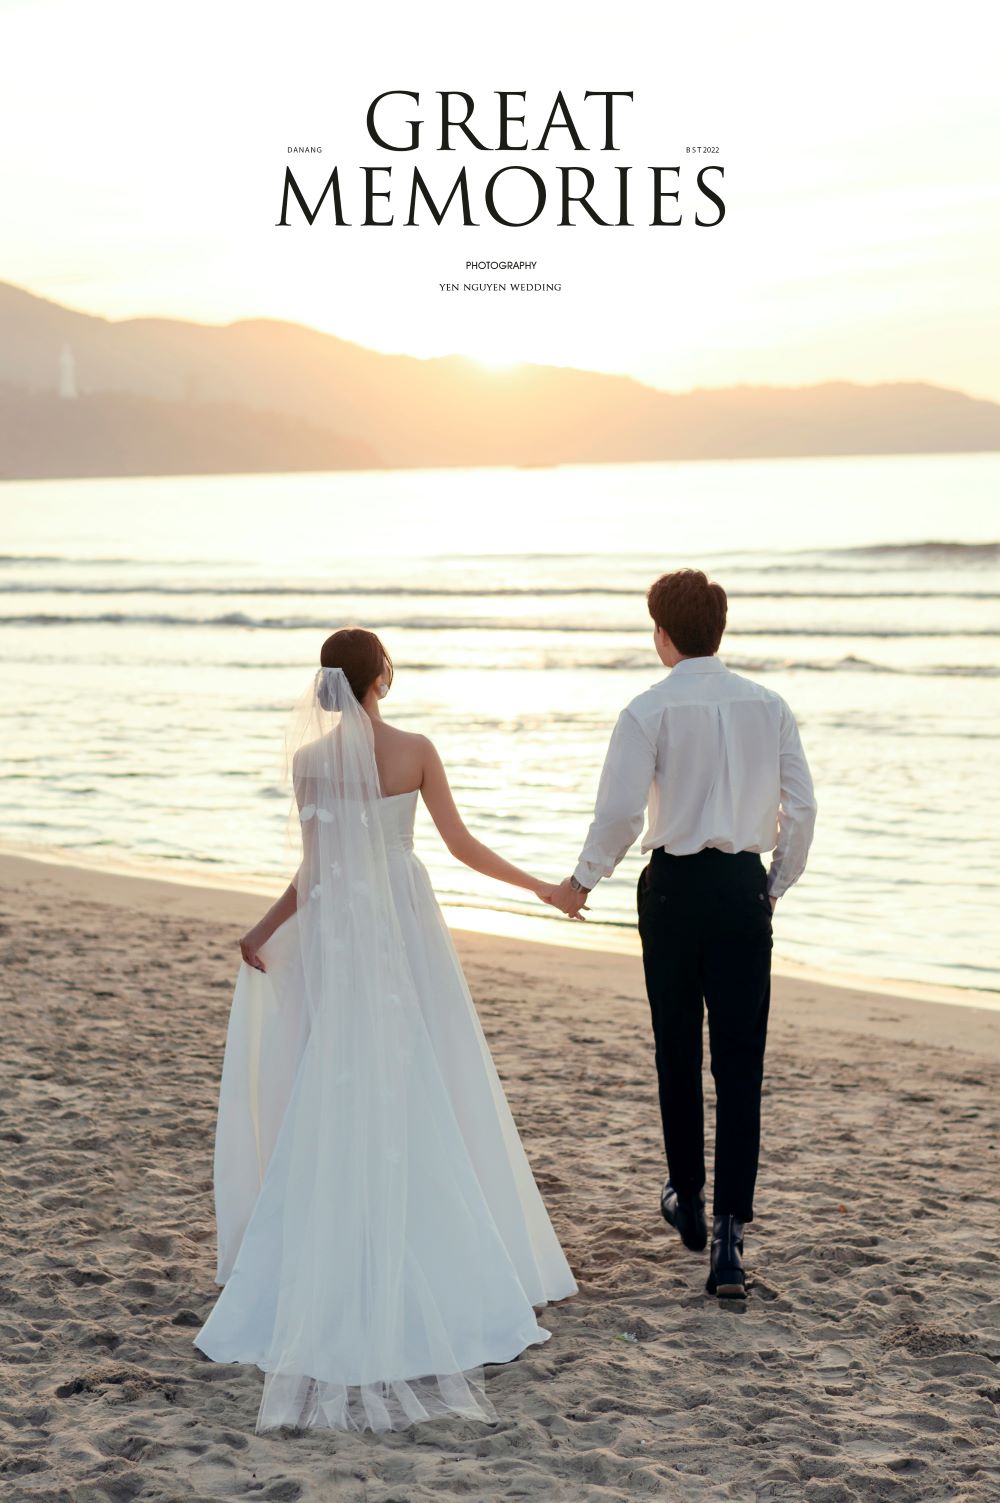 Yen Nguyen Bridal - Wedding service paradise for couples - Photo 5.